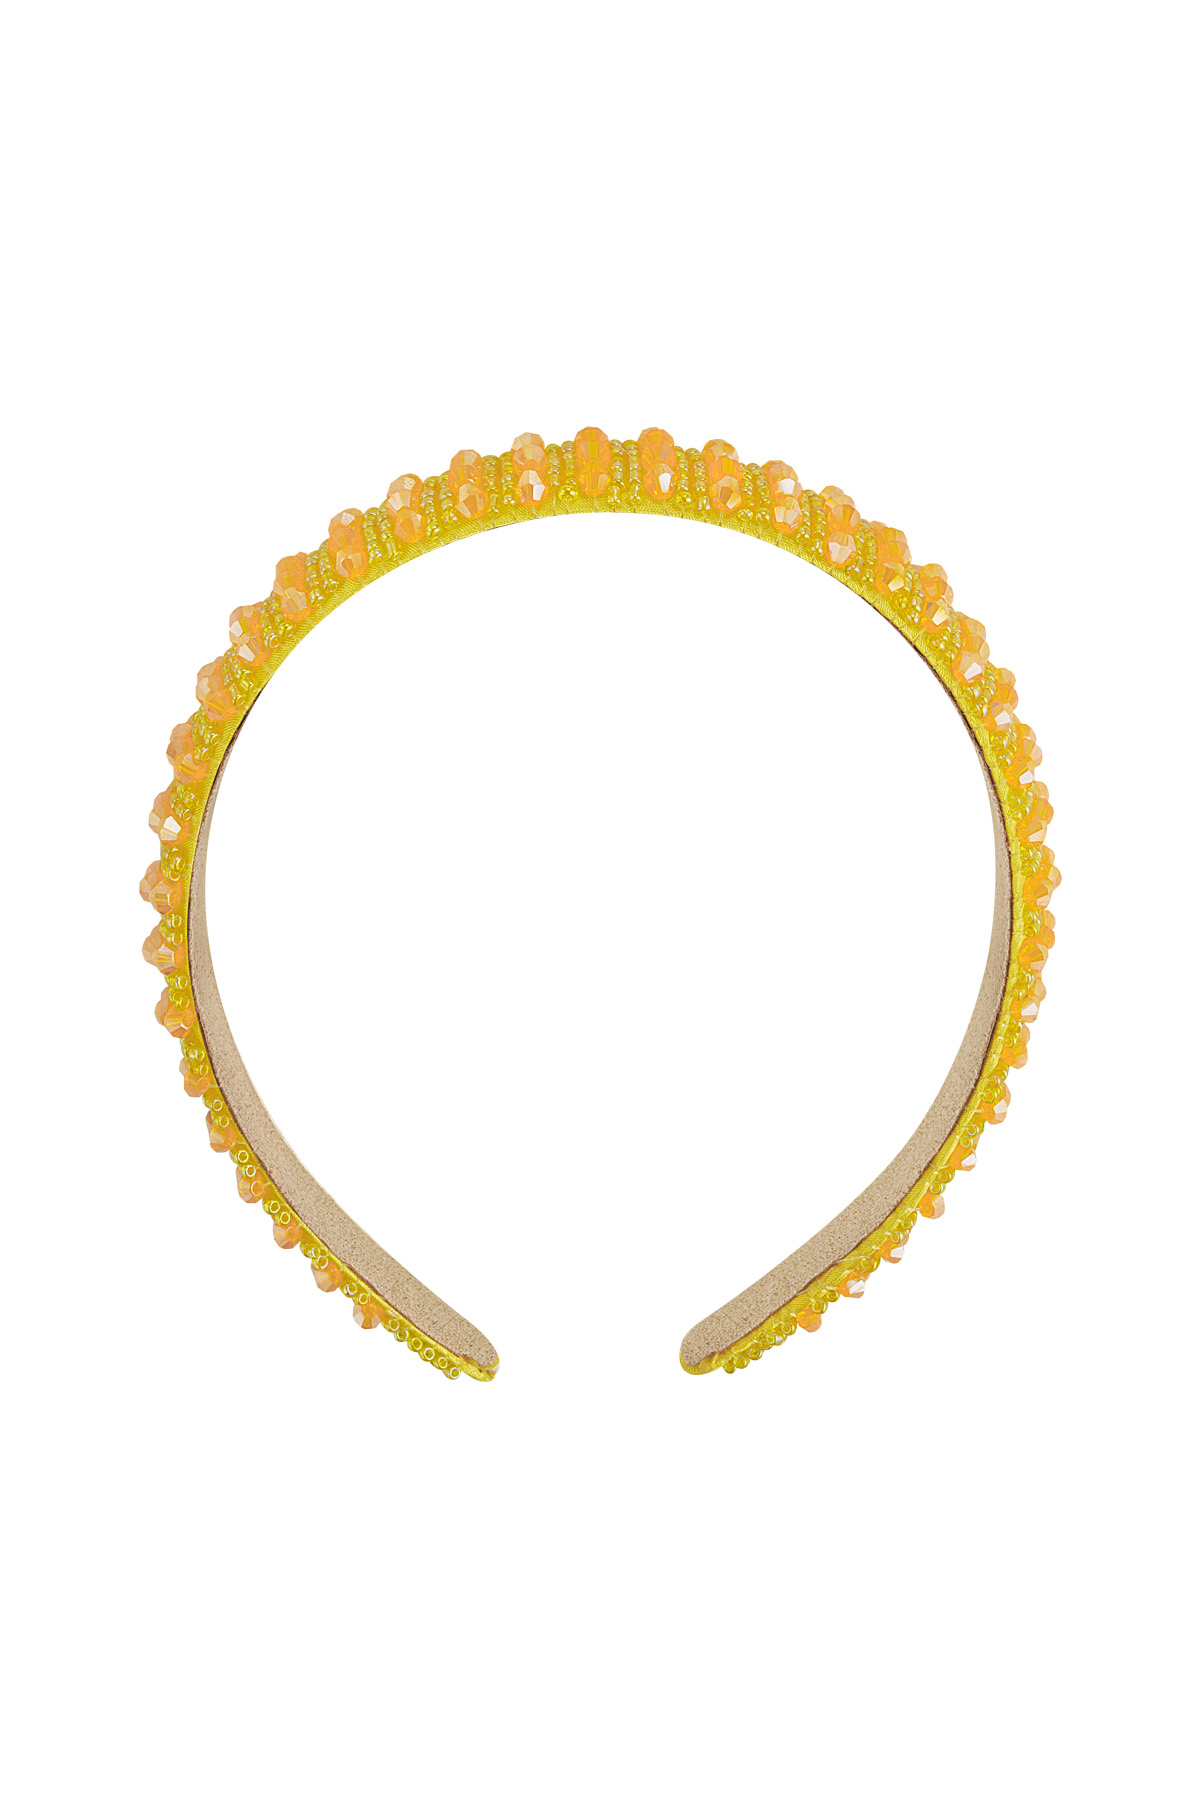 Hairband rhinestones - yellow Plastic h5 